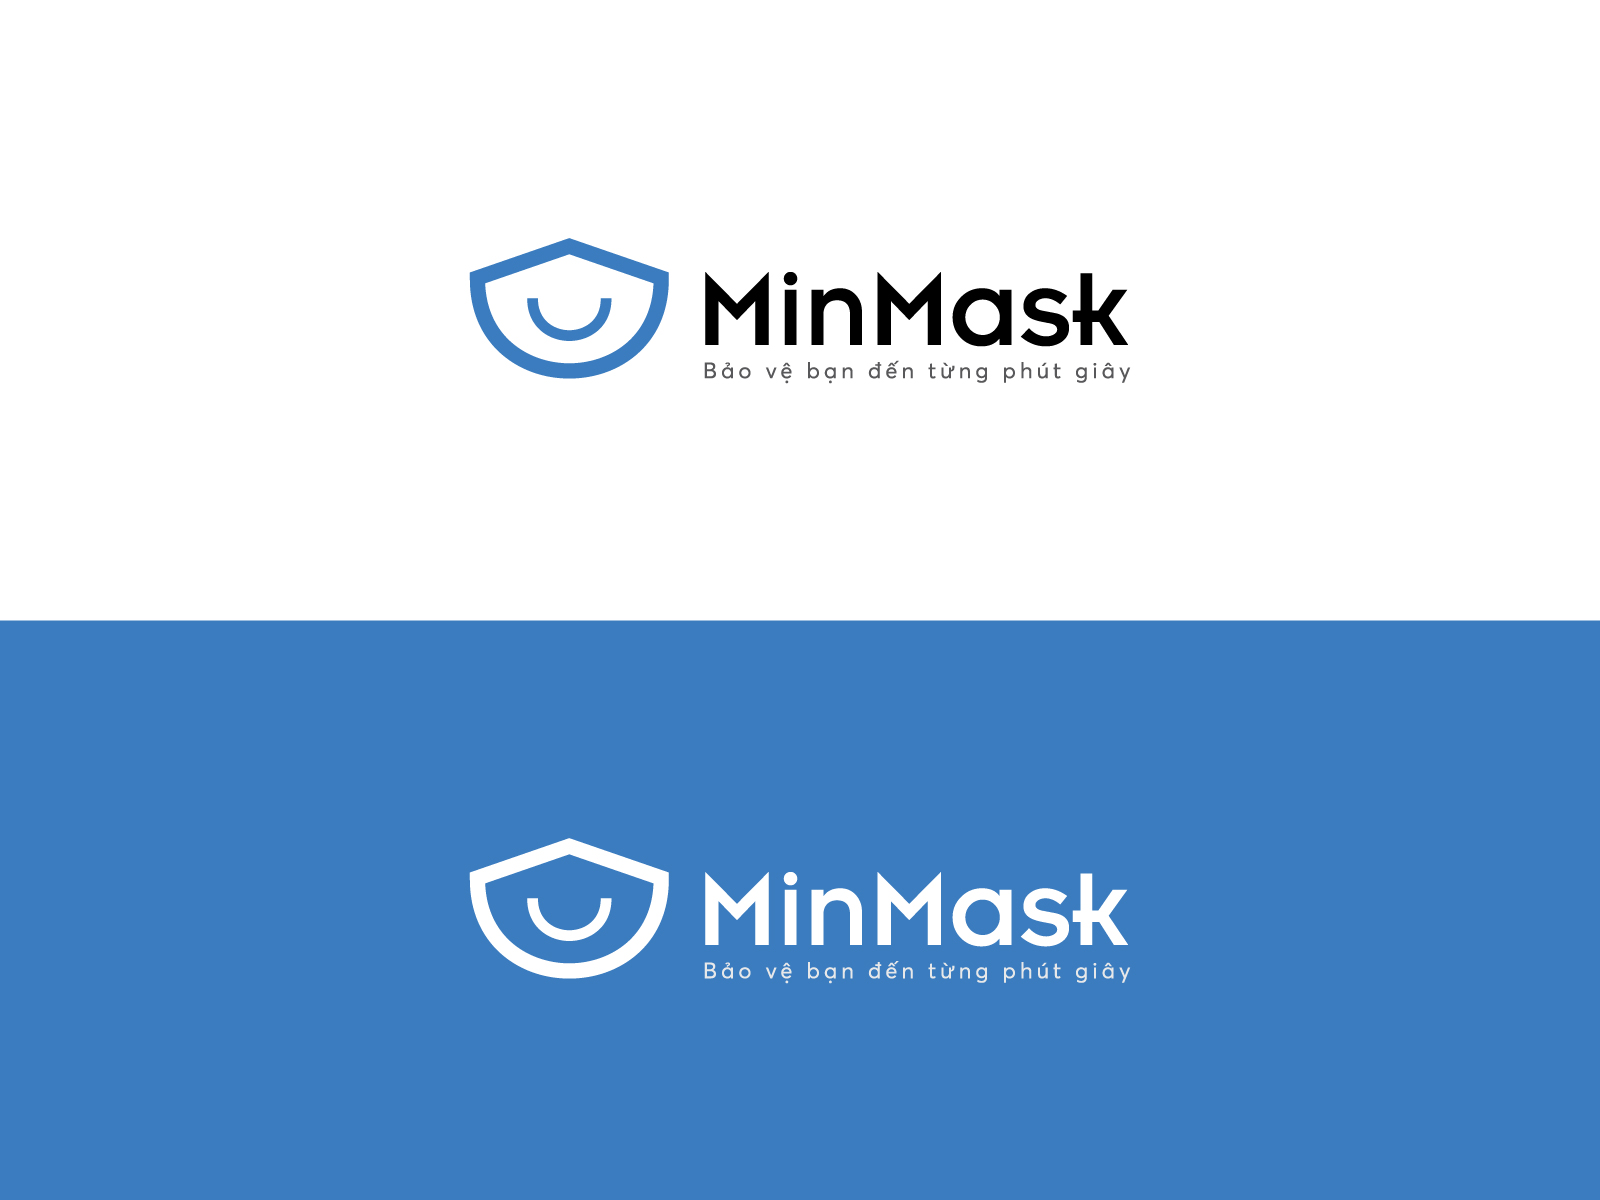 Minmask logo 4